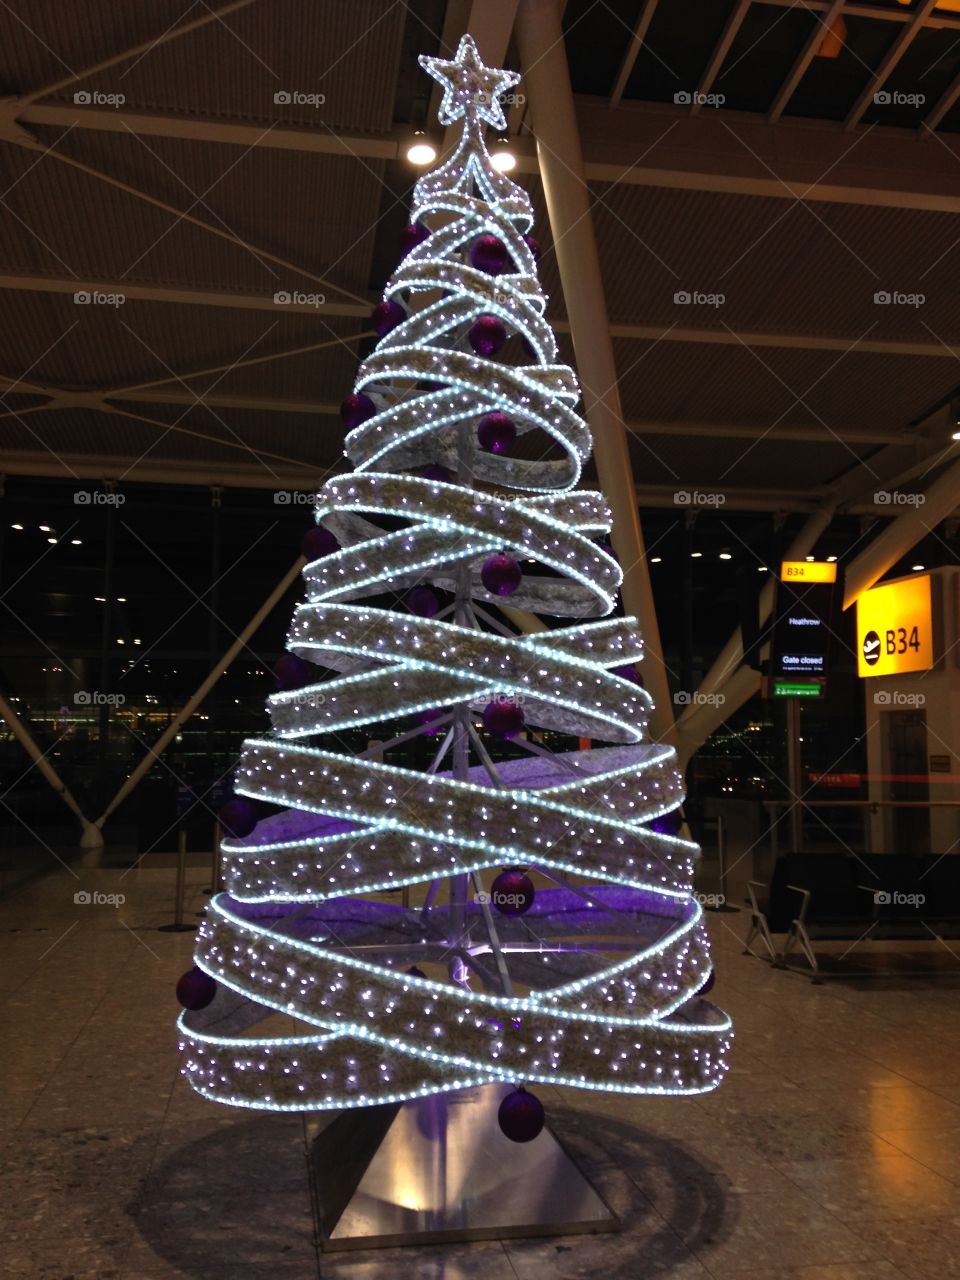 Christmas at Heathrow 